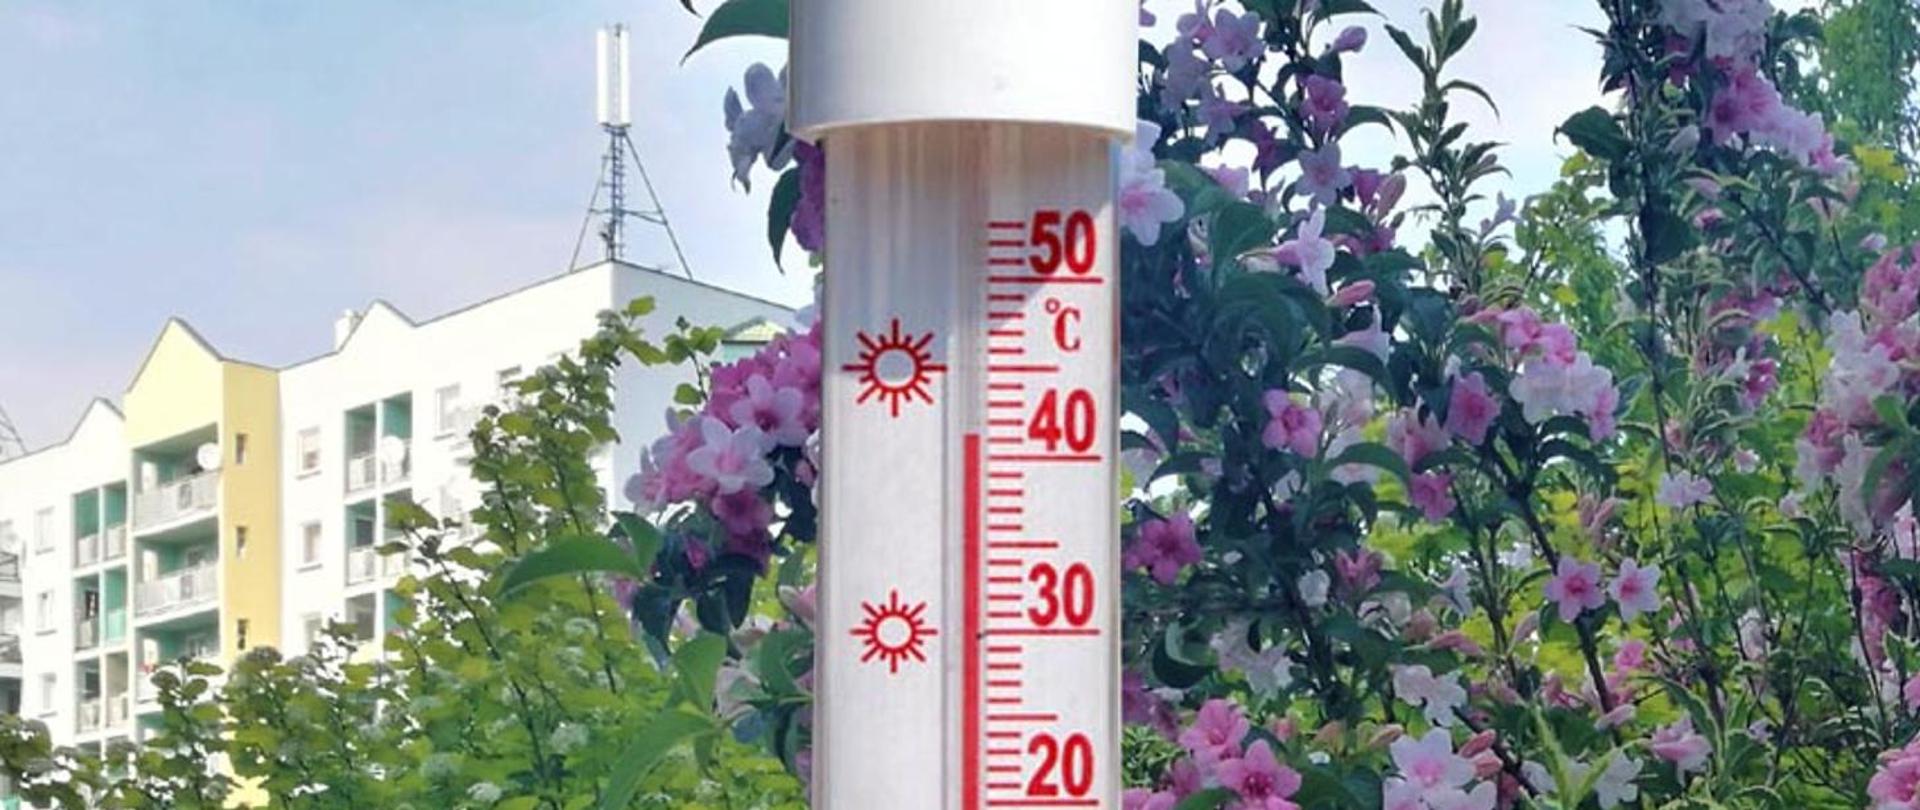 Zdjęcie przedstawia fragment tradycyjnego termometru zewnętrznego, który wskazuje temperaturę ponad 40 stopni Celsjusza. W tle zdjęcia znajdują się kwiaty i inne rośliny zielone oraz fragment budynku mieszkalnego wielorodzinnego. W górnej części zdjęcia widać niebo.